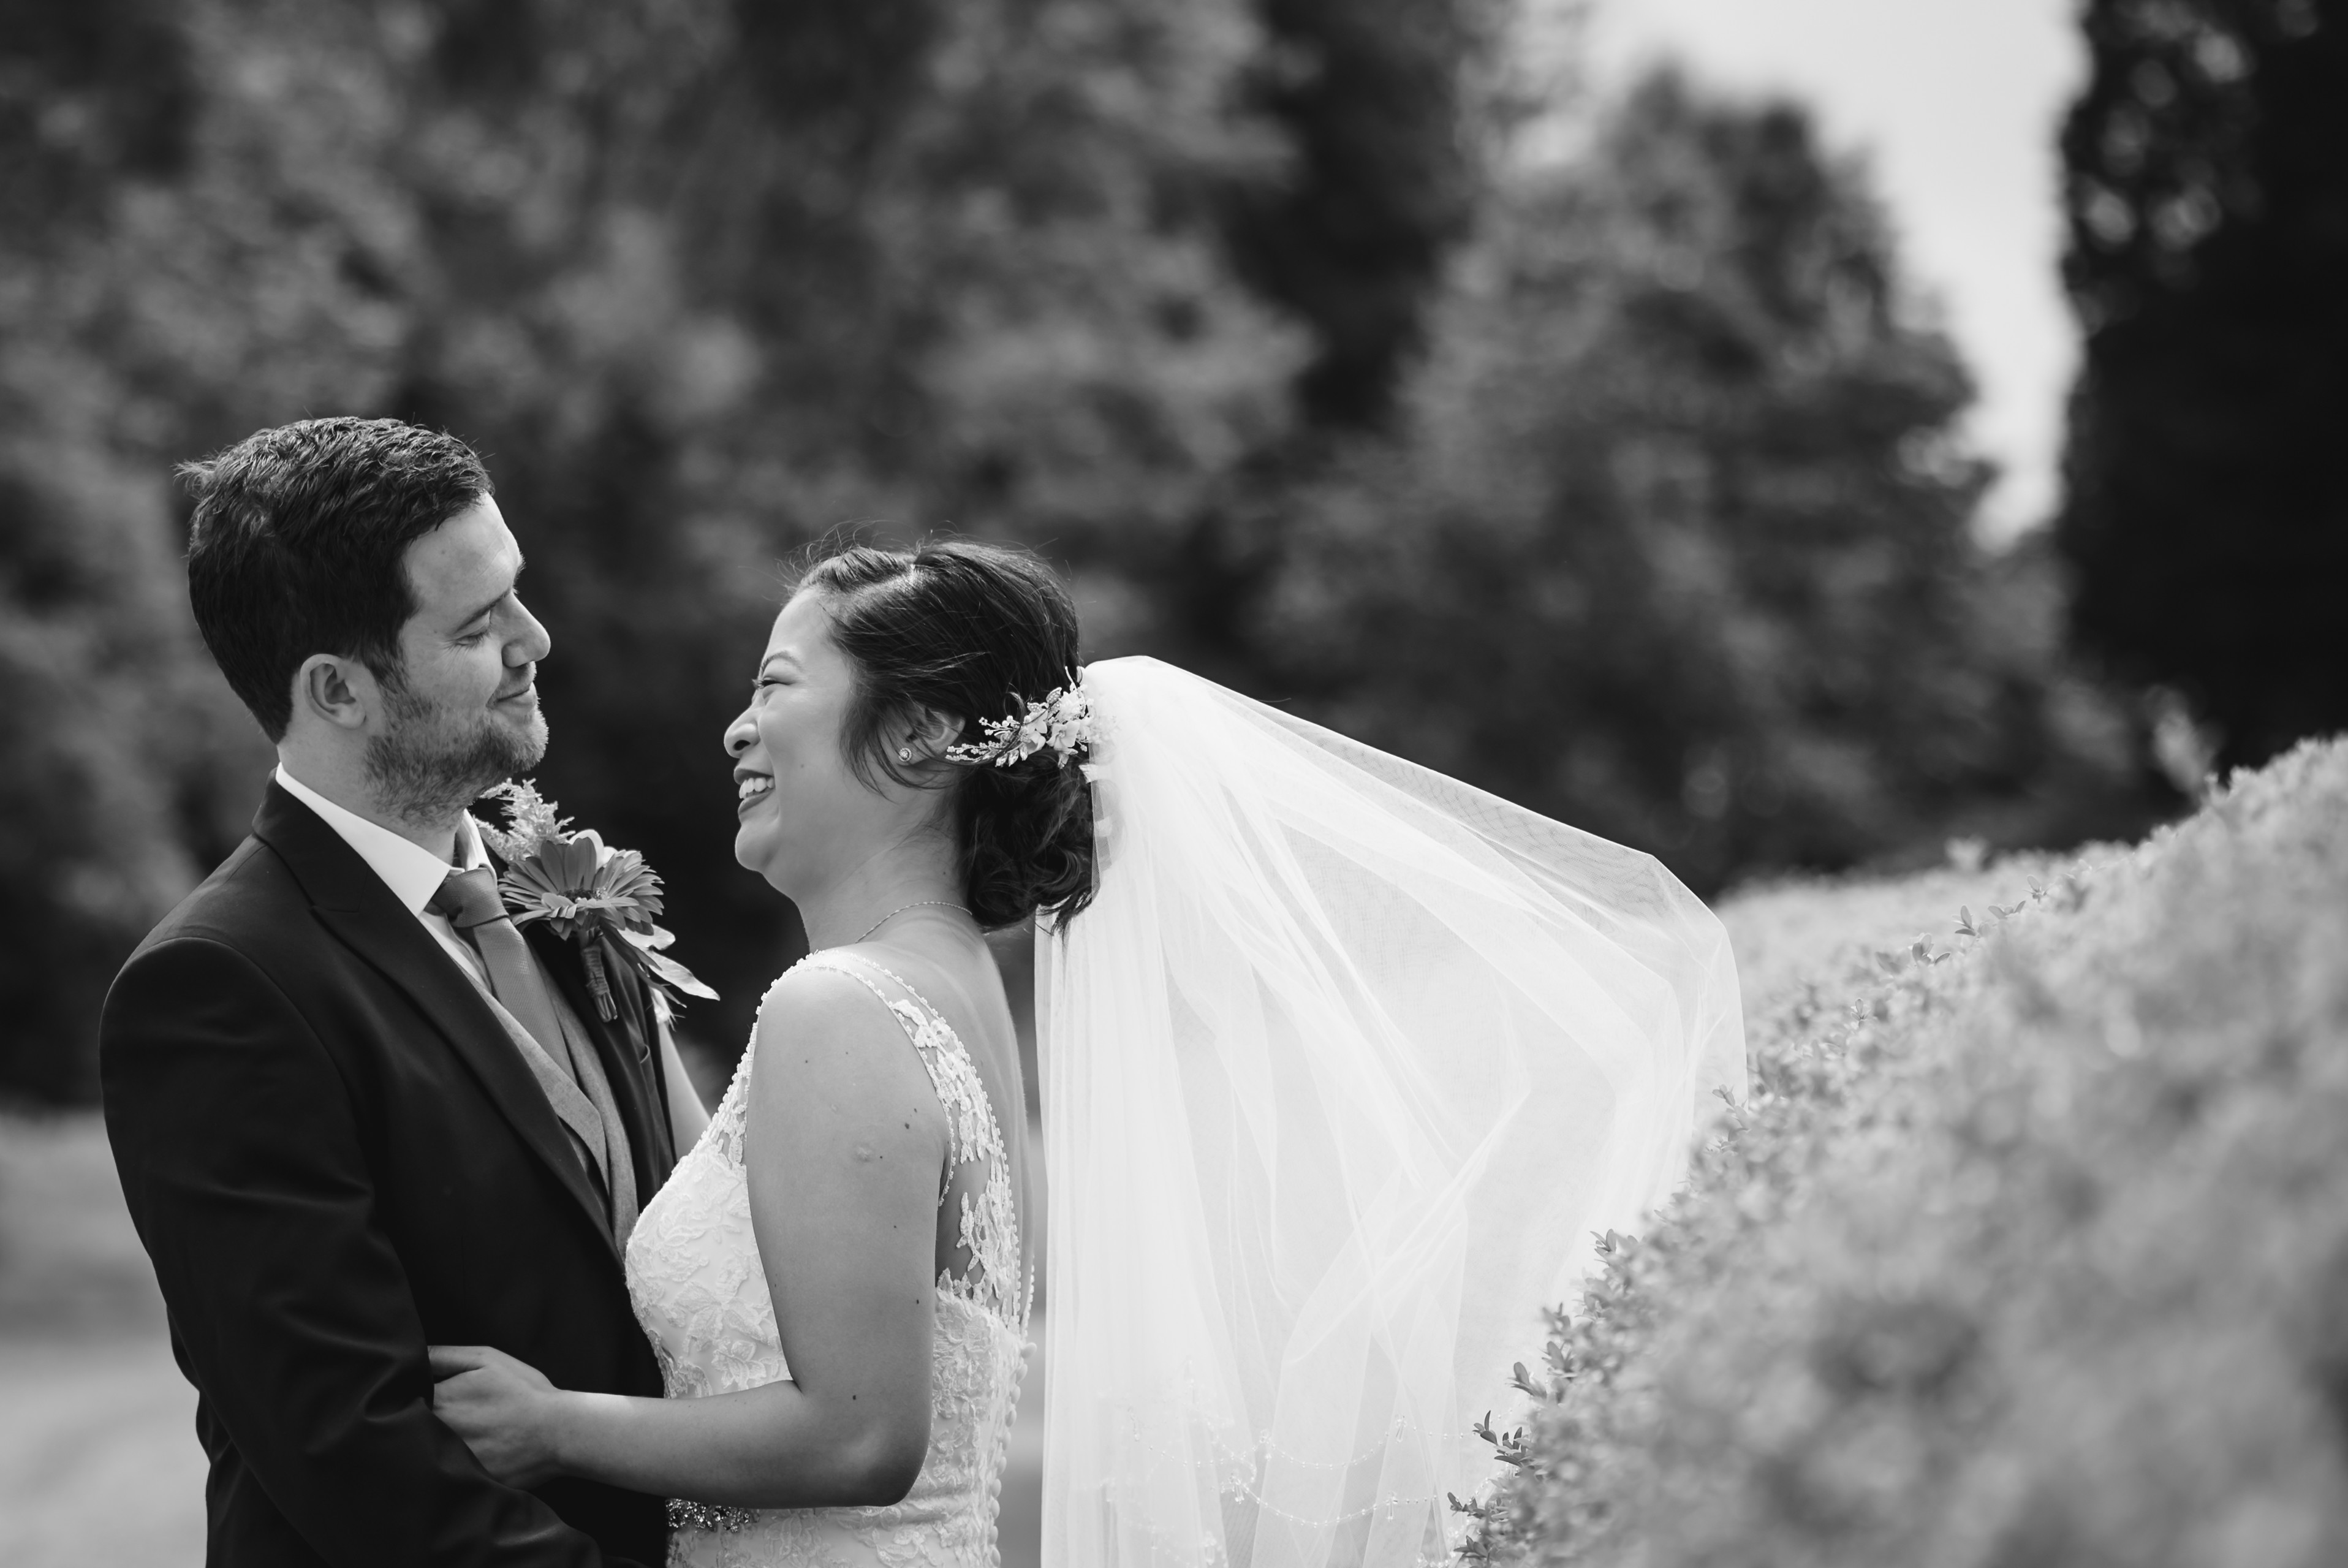 Robert Matthews and Jacqueline Tsang Wedding - 03/06/2022